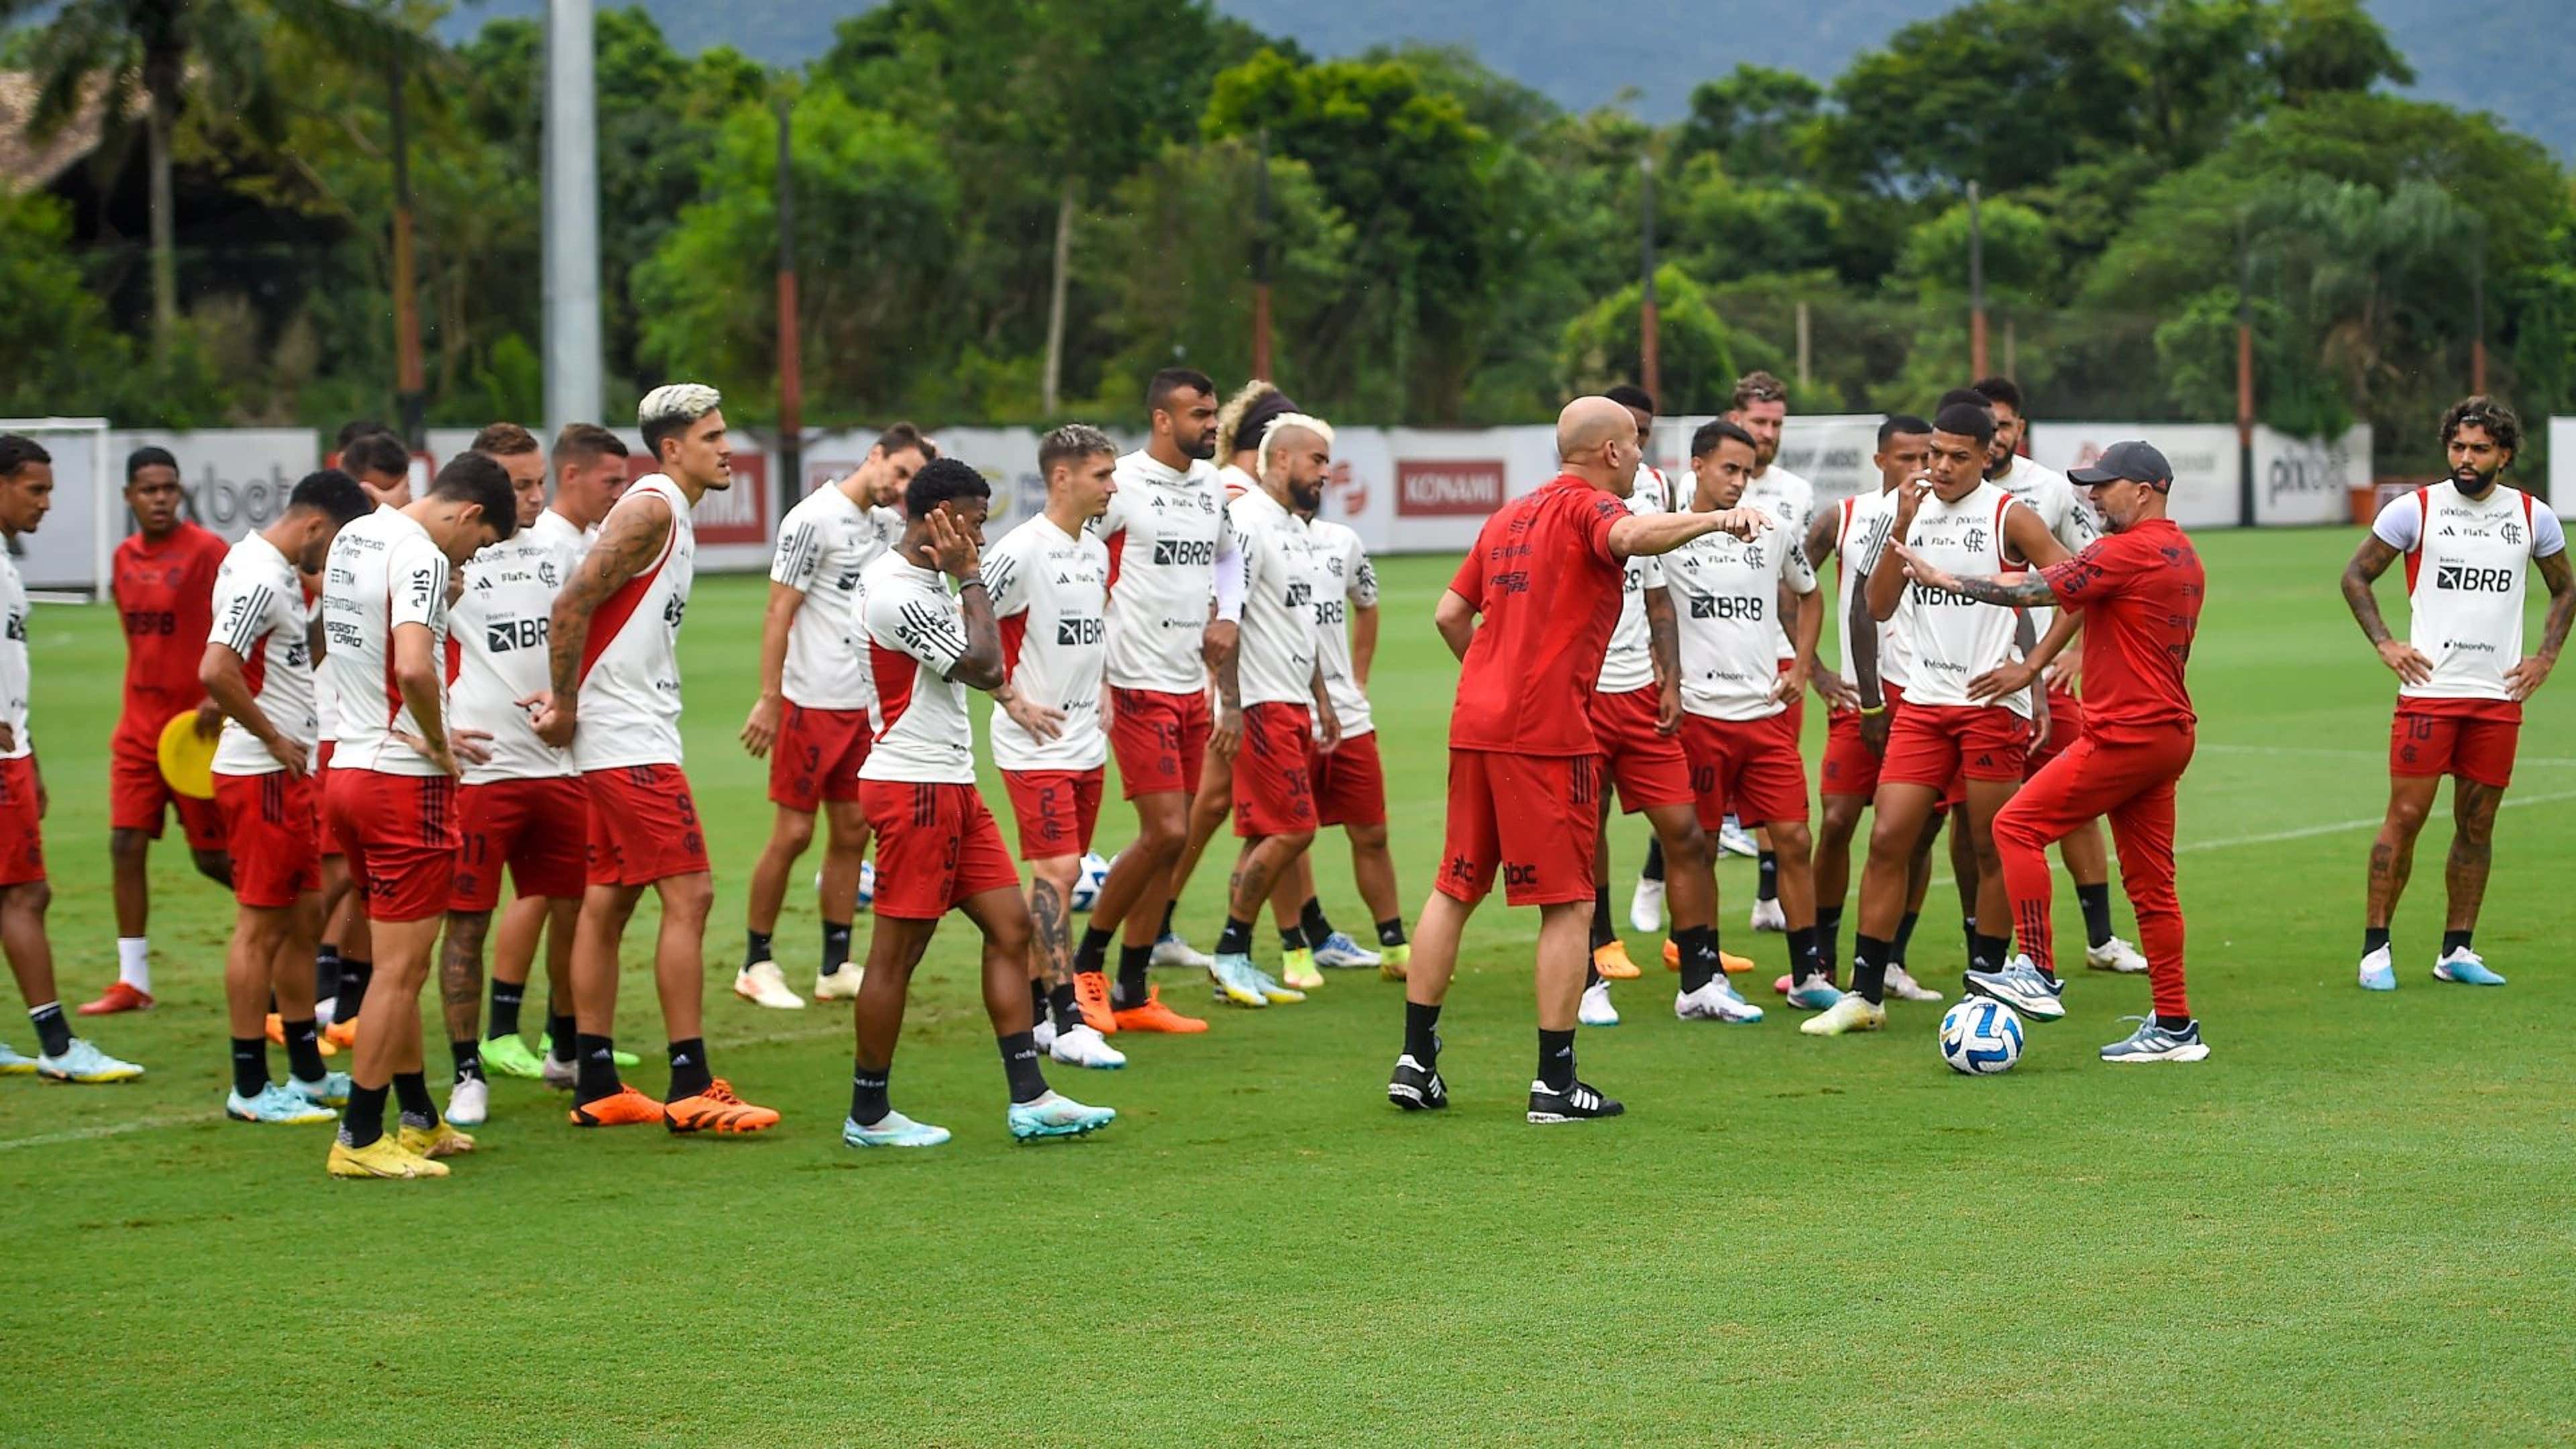 Sampaoli quer jogadores do Flamengo jogando bem: Religião é jogar futebol  o tempo todo - Brasileirão - Br - Futboo.com